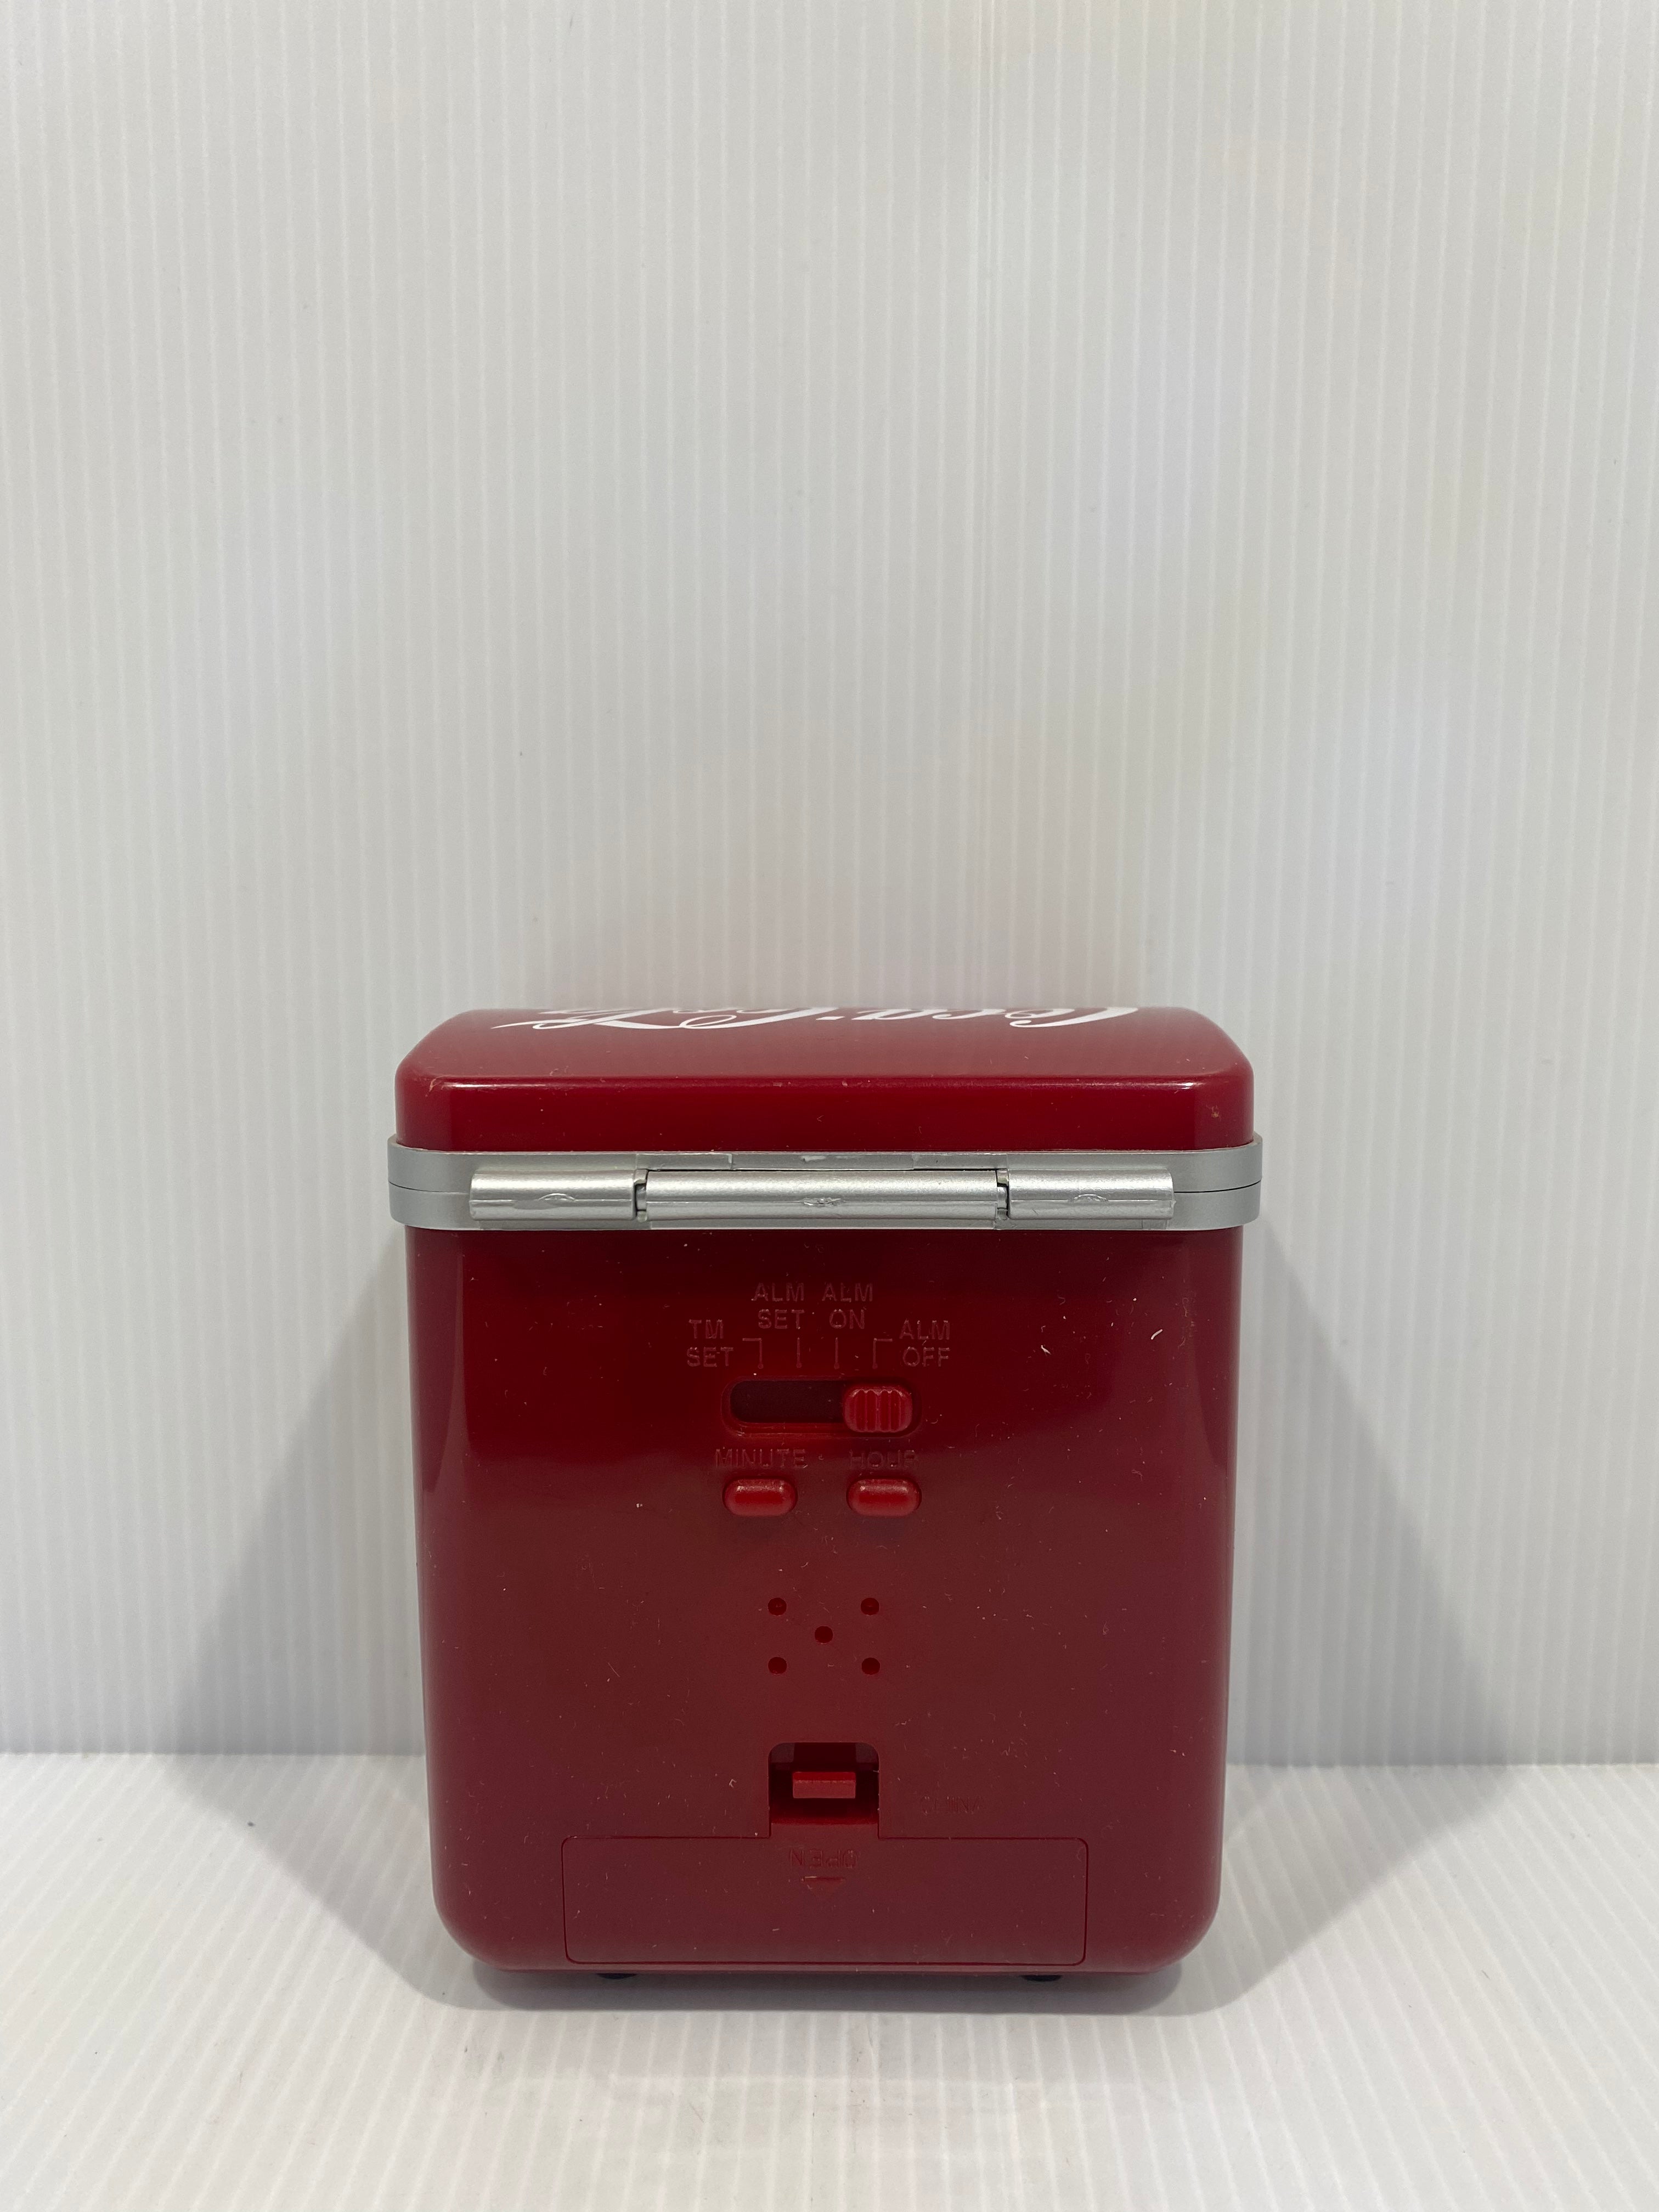 Coca-Cola retro cooler alarm clock